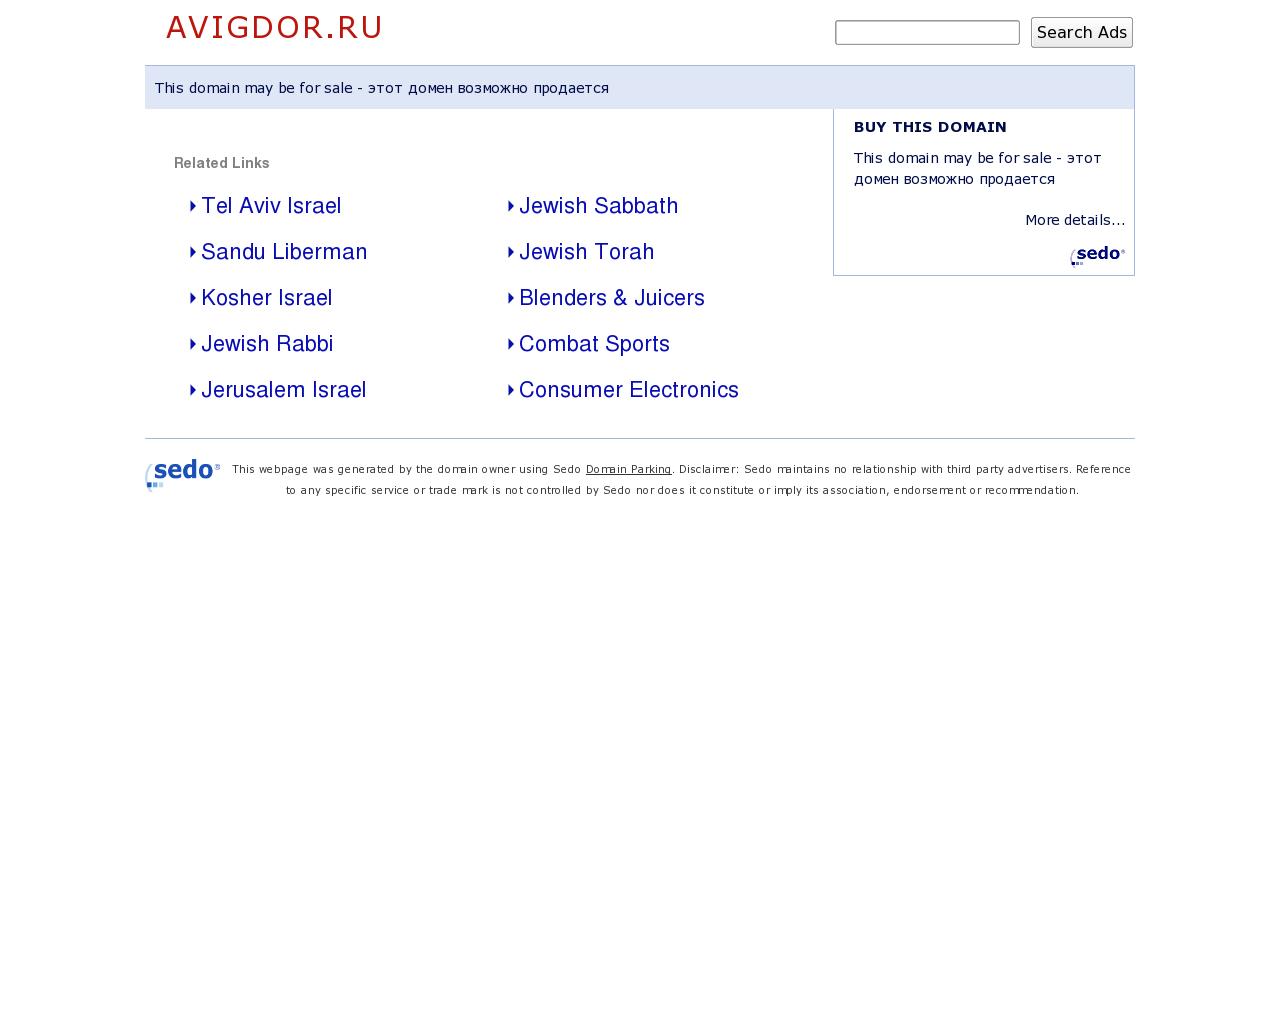 Изображение сайта avigdor.ru в разрешении 1280x1024